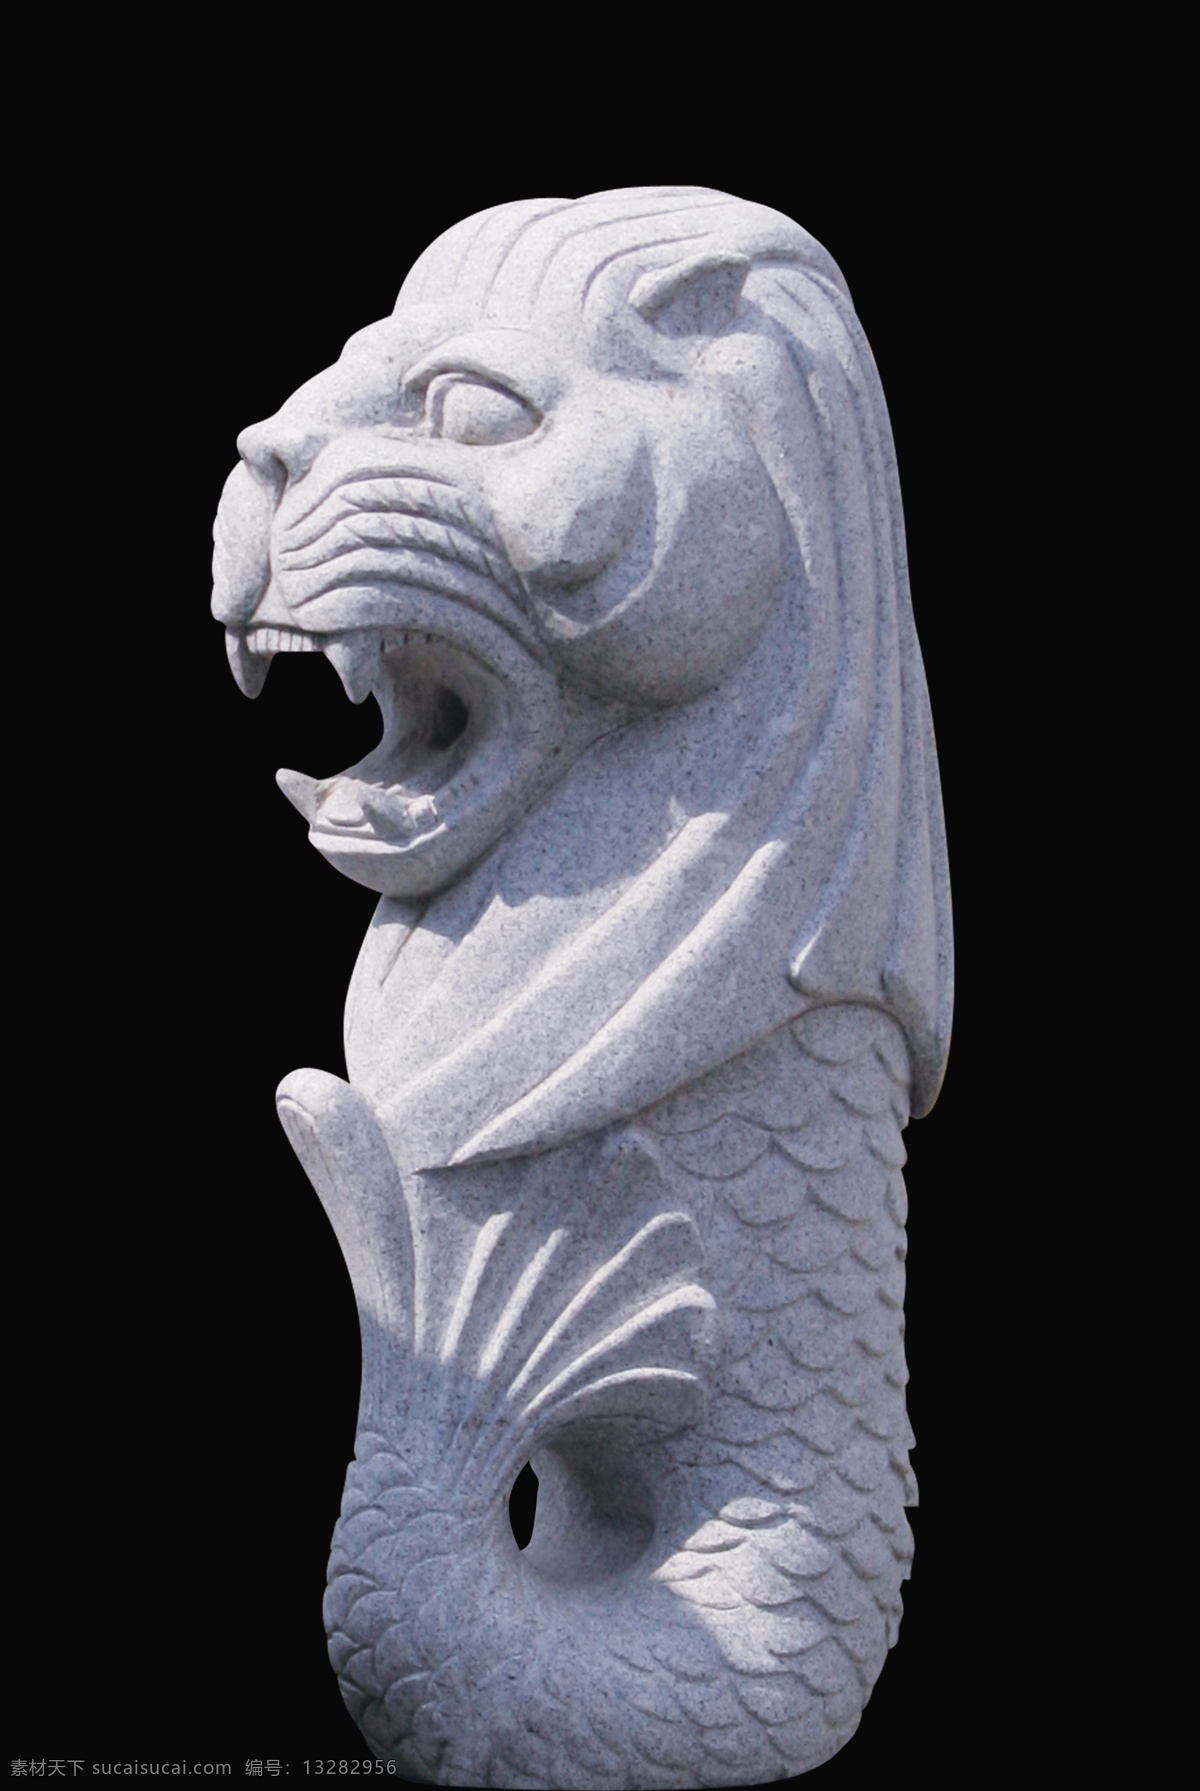 狮子头 鱼 身体 雕塑 狮子头雕塑 鱼身体雕塑 动物雕塑 奇怪的动物 psd源文件